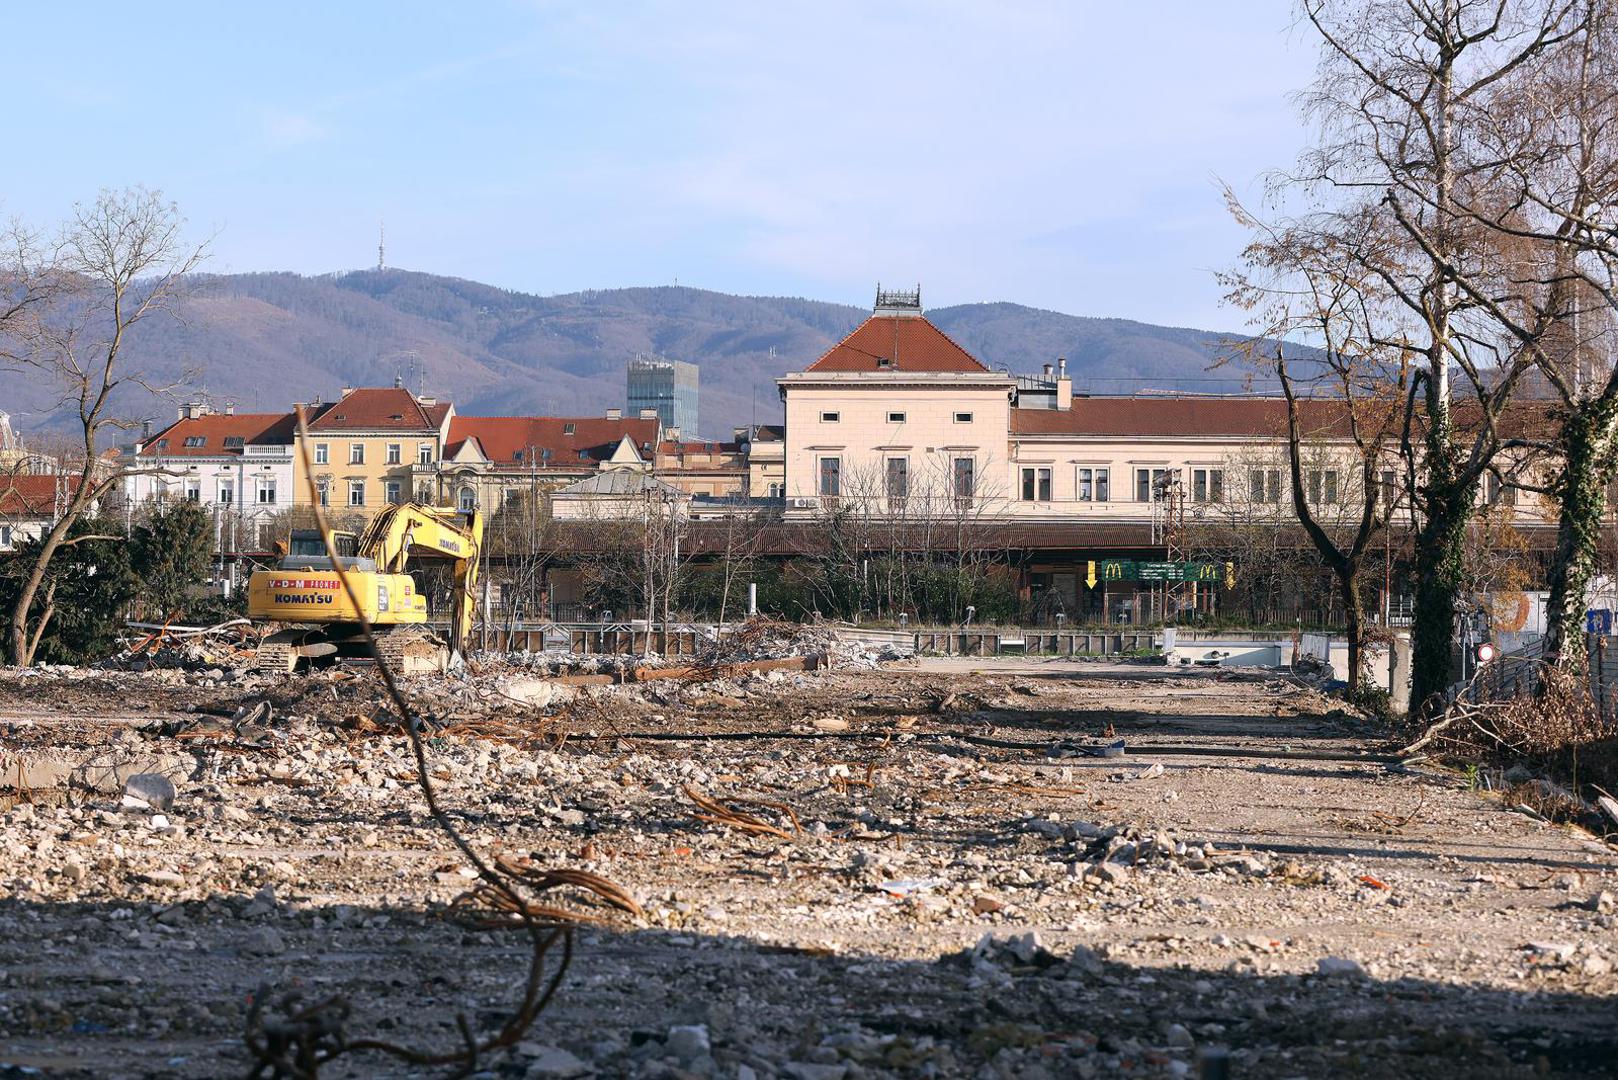 Nakon devet mjeseci konačno je srušena stara zgrada Zagrebačke banke u Paromlinskoj.